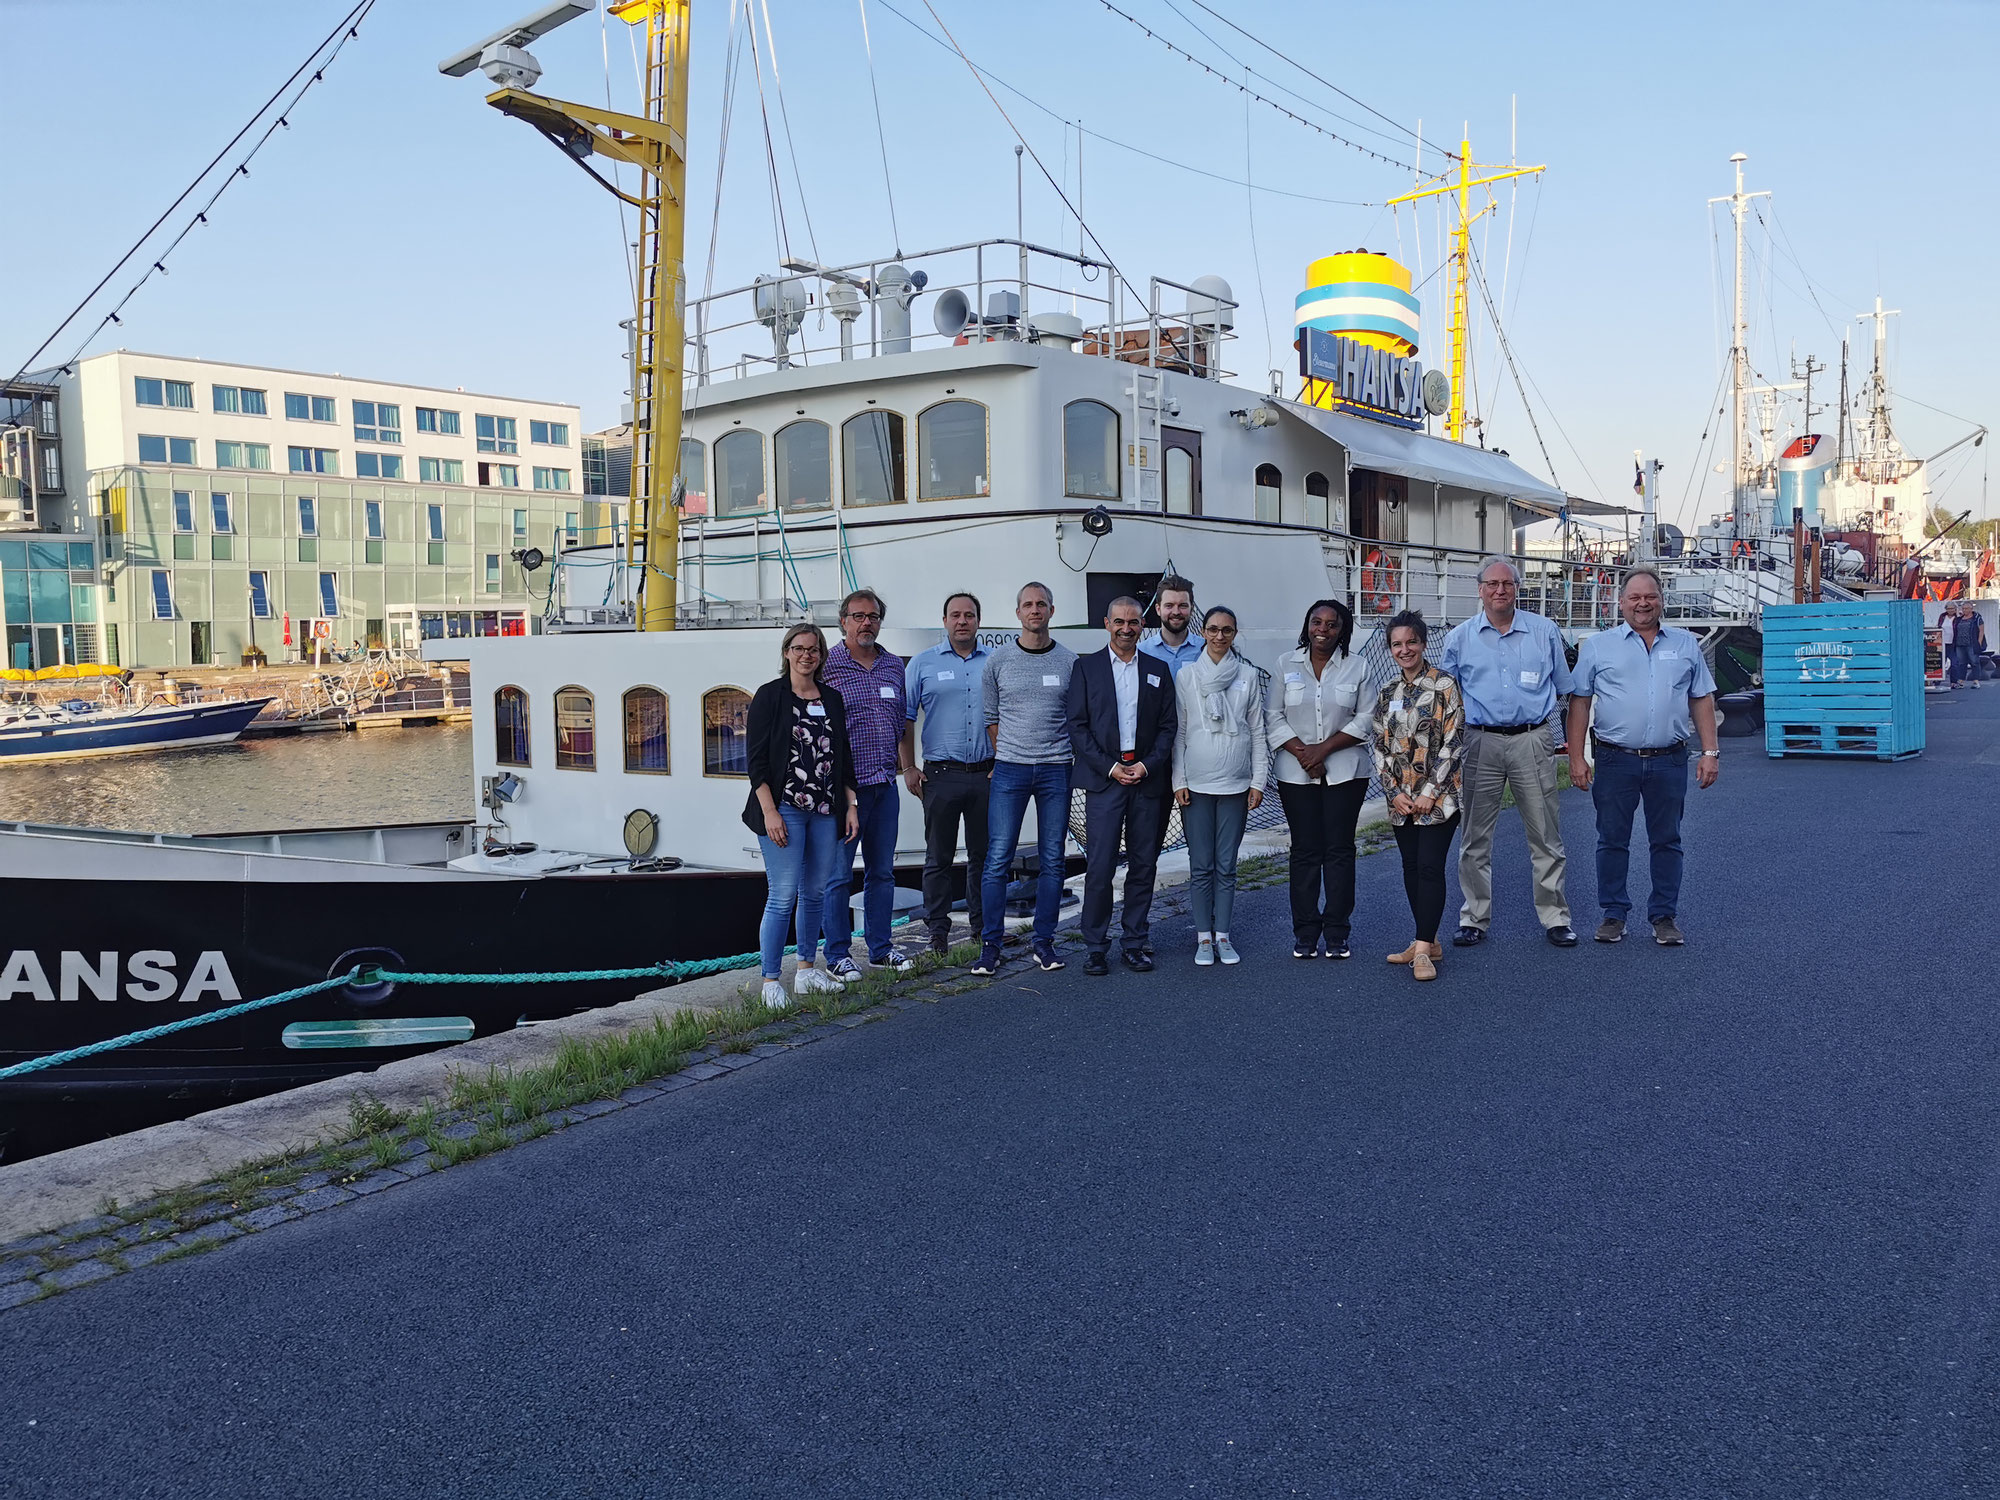 Internationales ZIM Netzwerk Aquaponik trifft sich in Bremerhaven